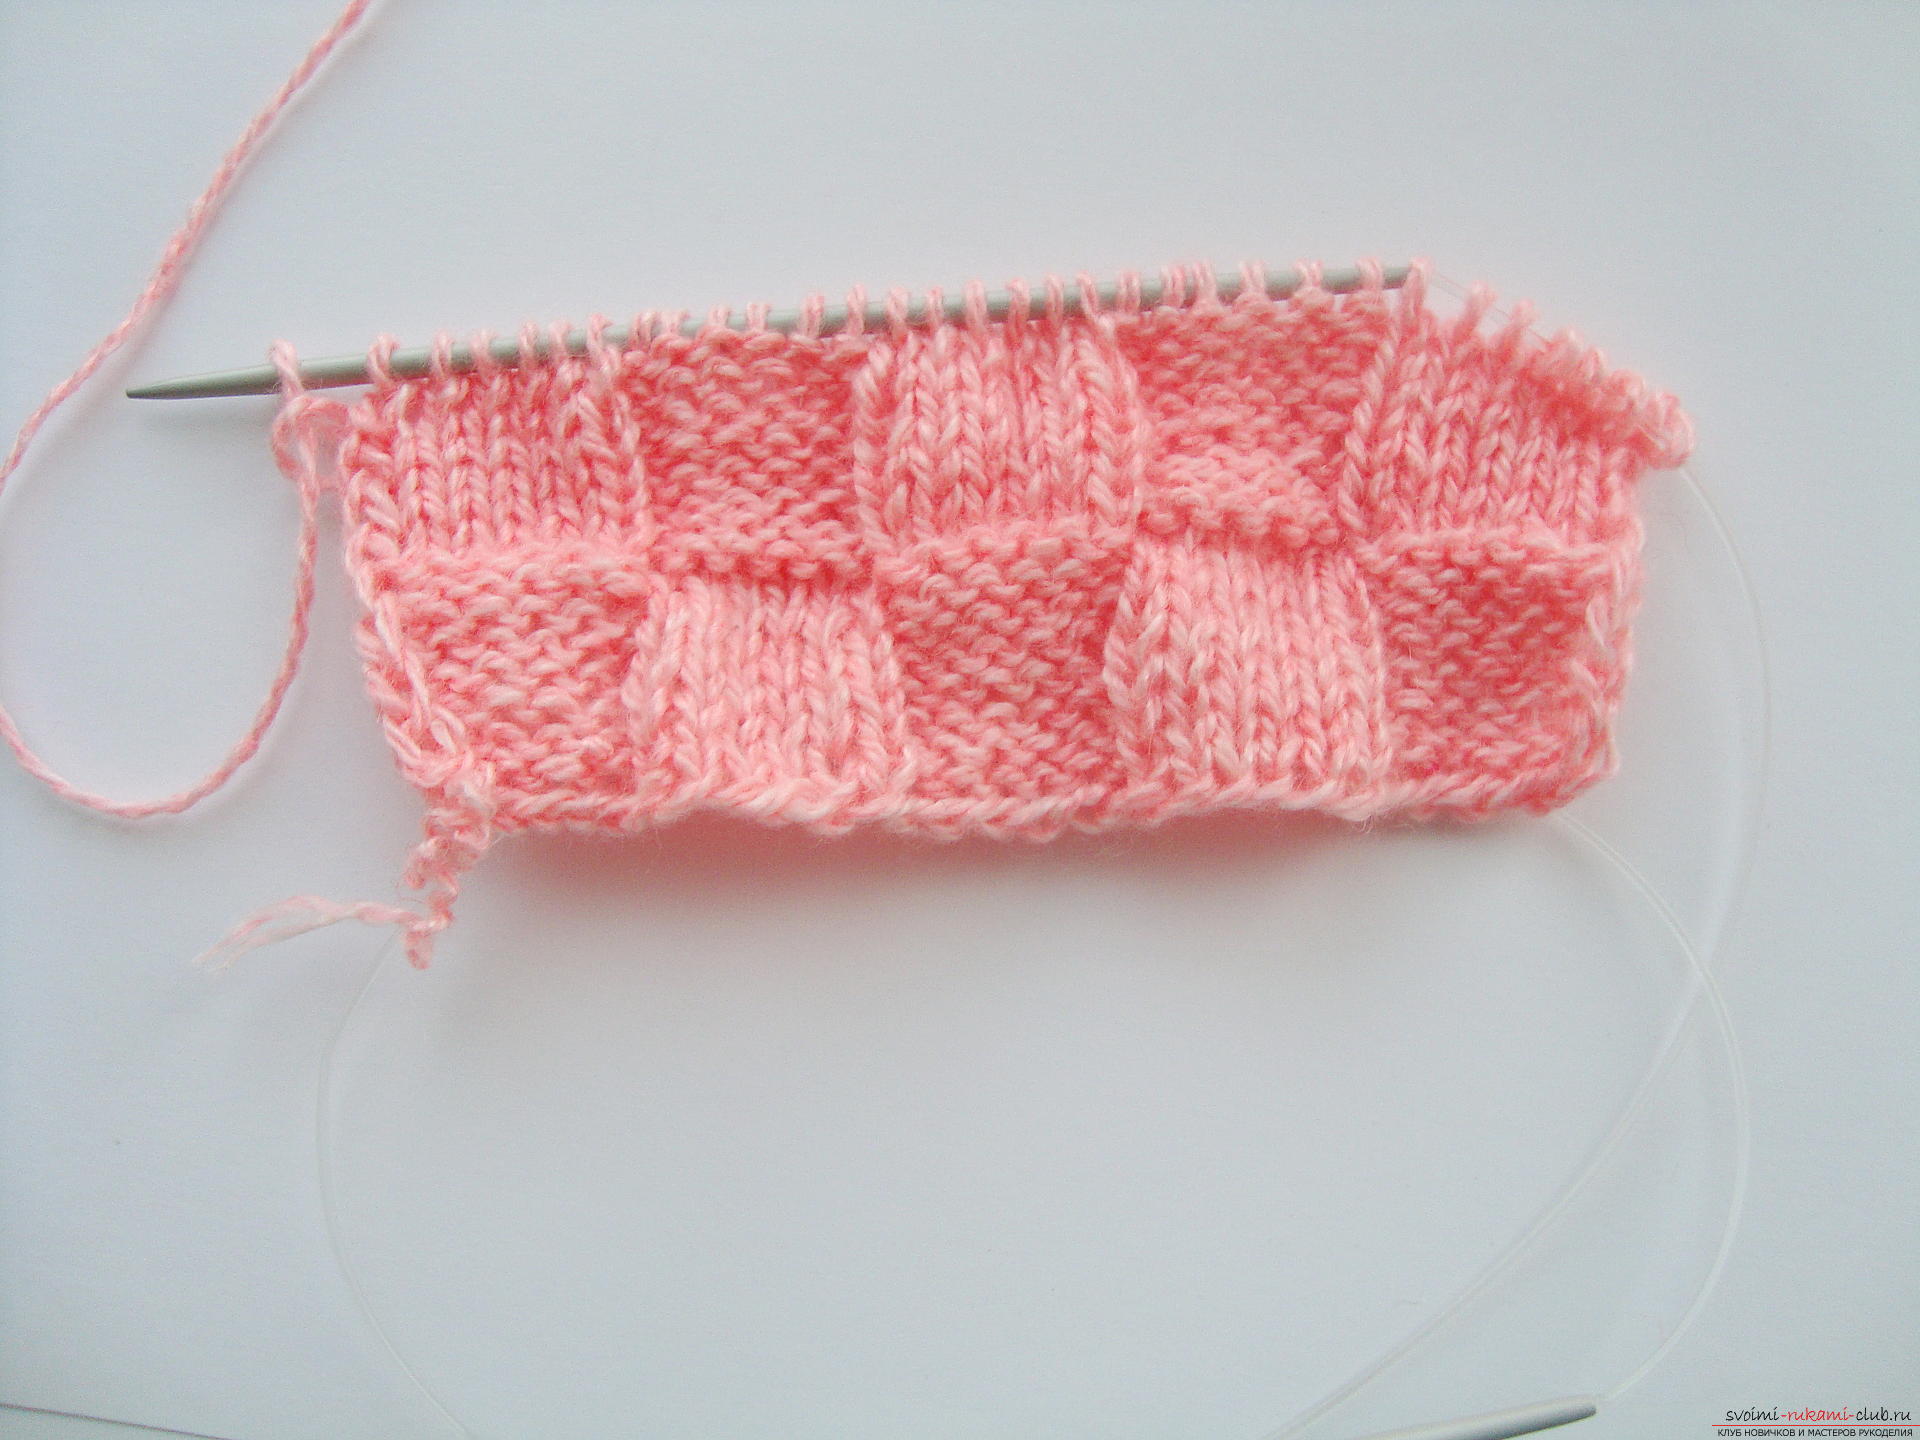 Photo-instruction on knitting needles-napkins under the hot. Photo №7